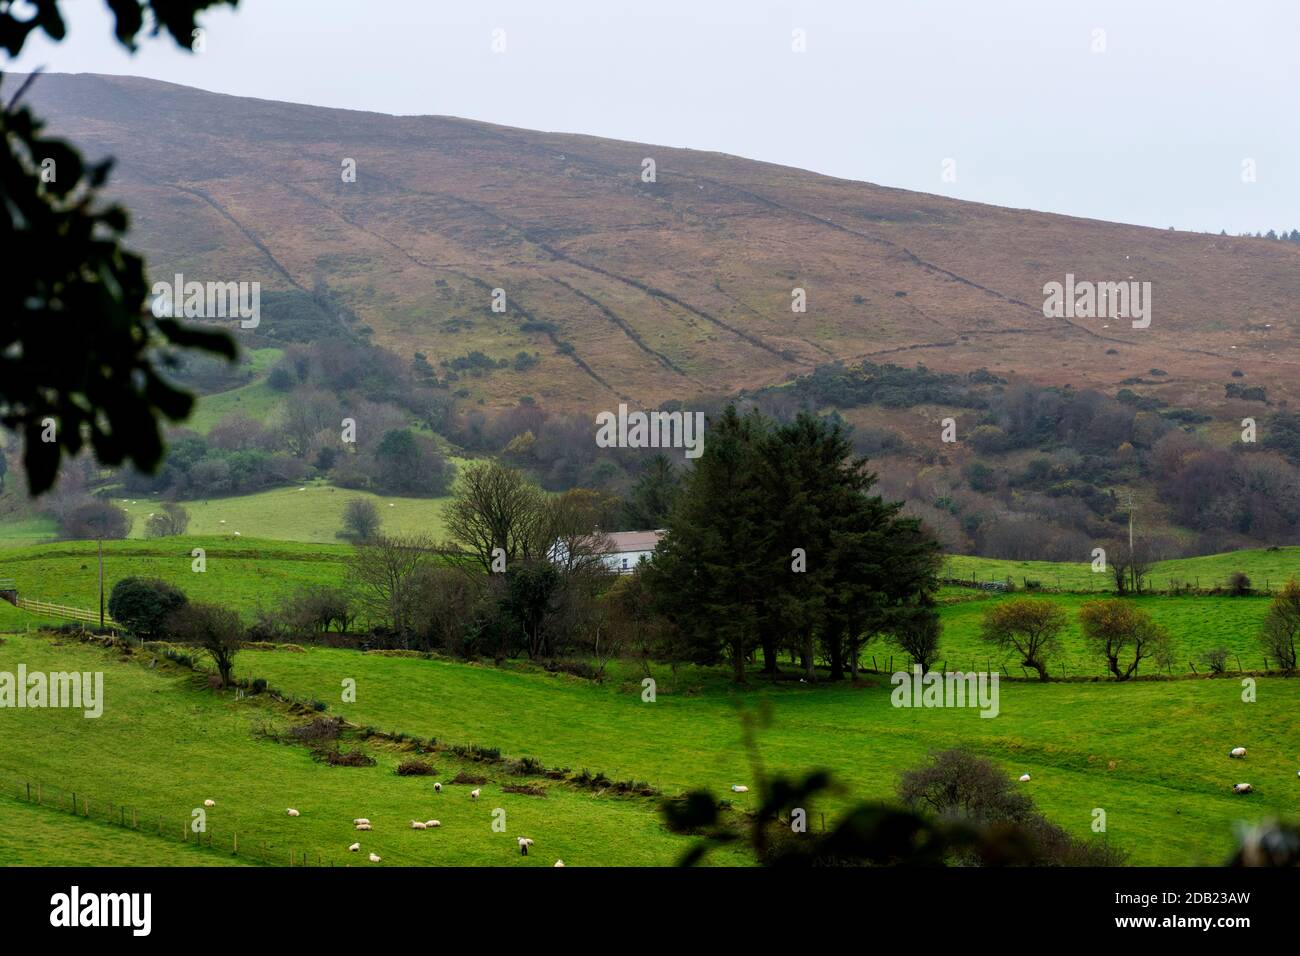 Ardara, Contea di Donegal, Irlanda, 16 novembre 2020. Meteo. Un giorno 'soft' che significa uno con pioggia frizzante in vernacolare locale su una piccola fattoria di pecore. Foto Stock